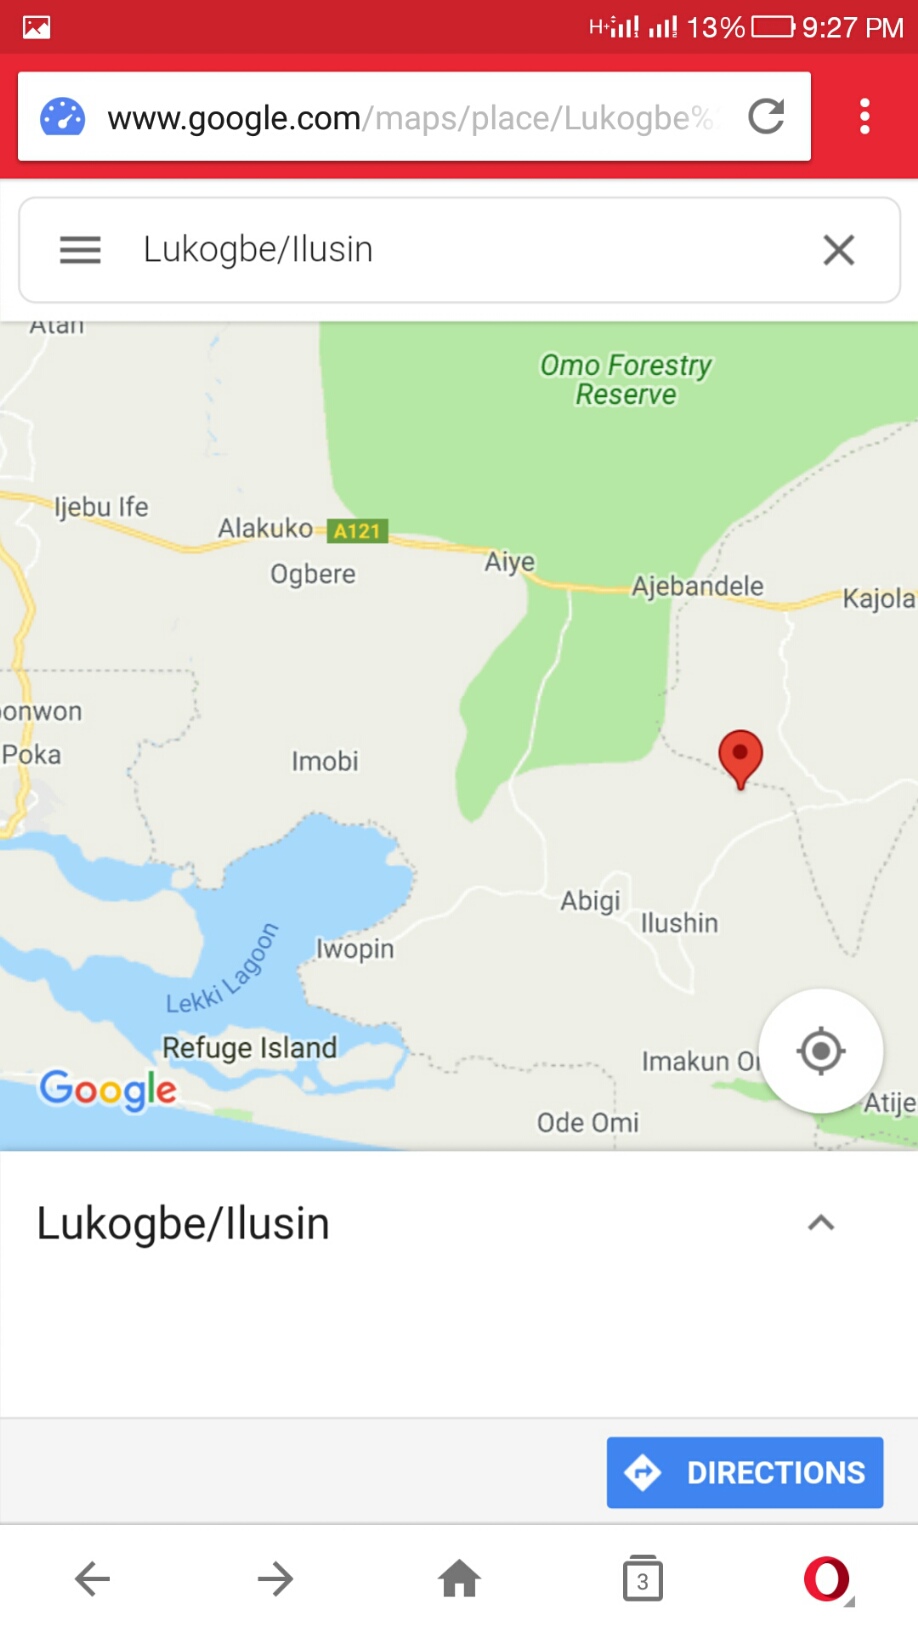 rubber-estate-nigeria-limited-utagba-uno-delta-state